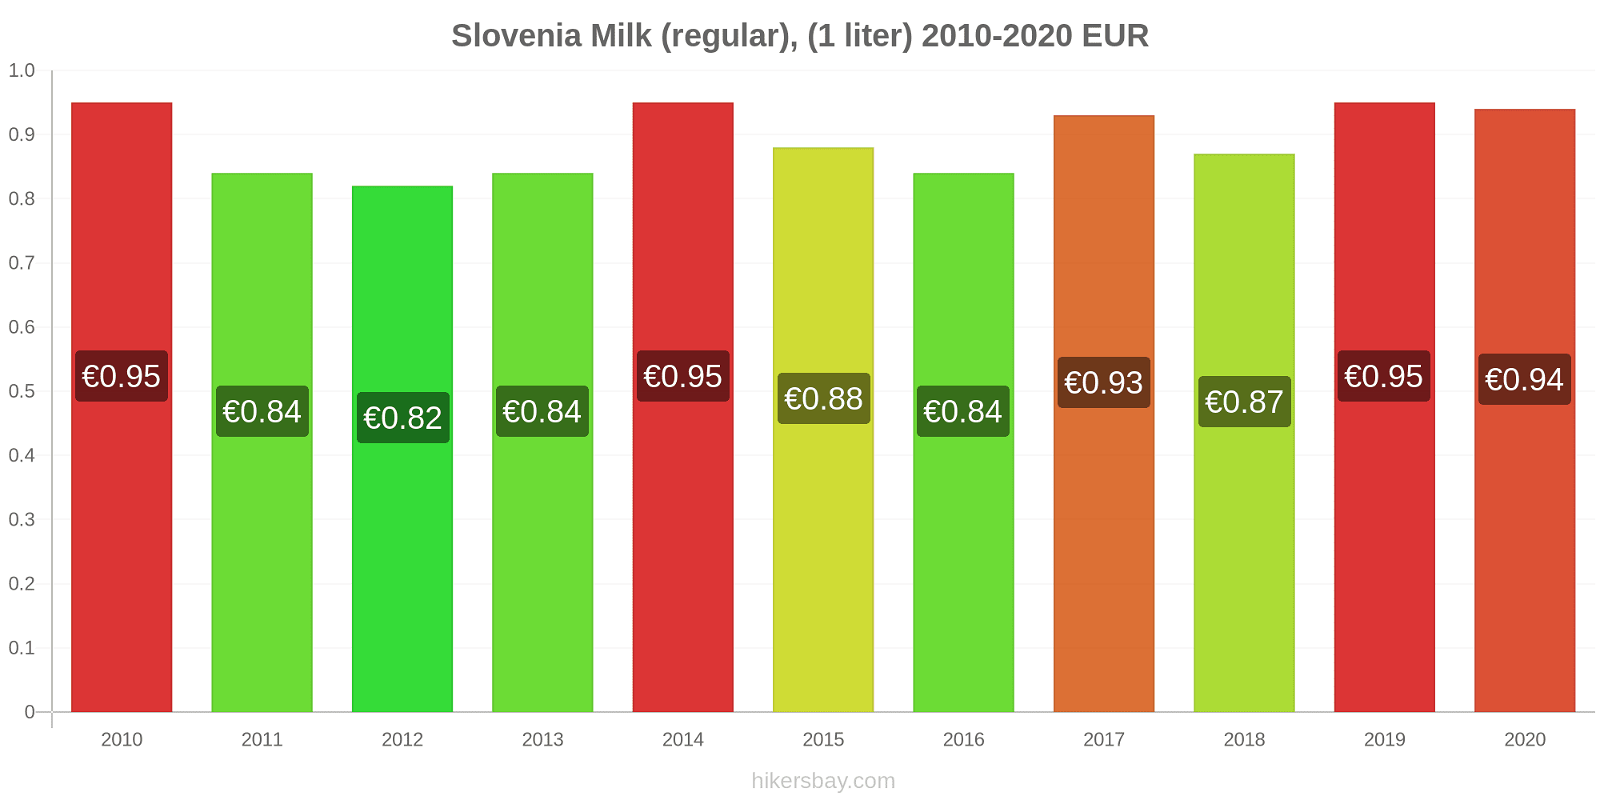 Slovenia price changes Milk (regular), (1 liter) hikersbay.com